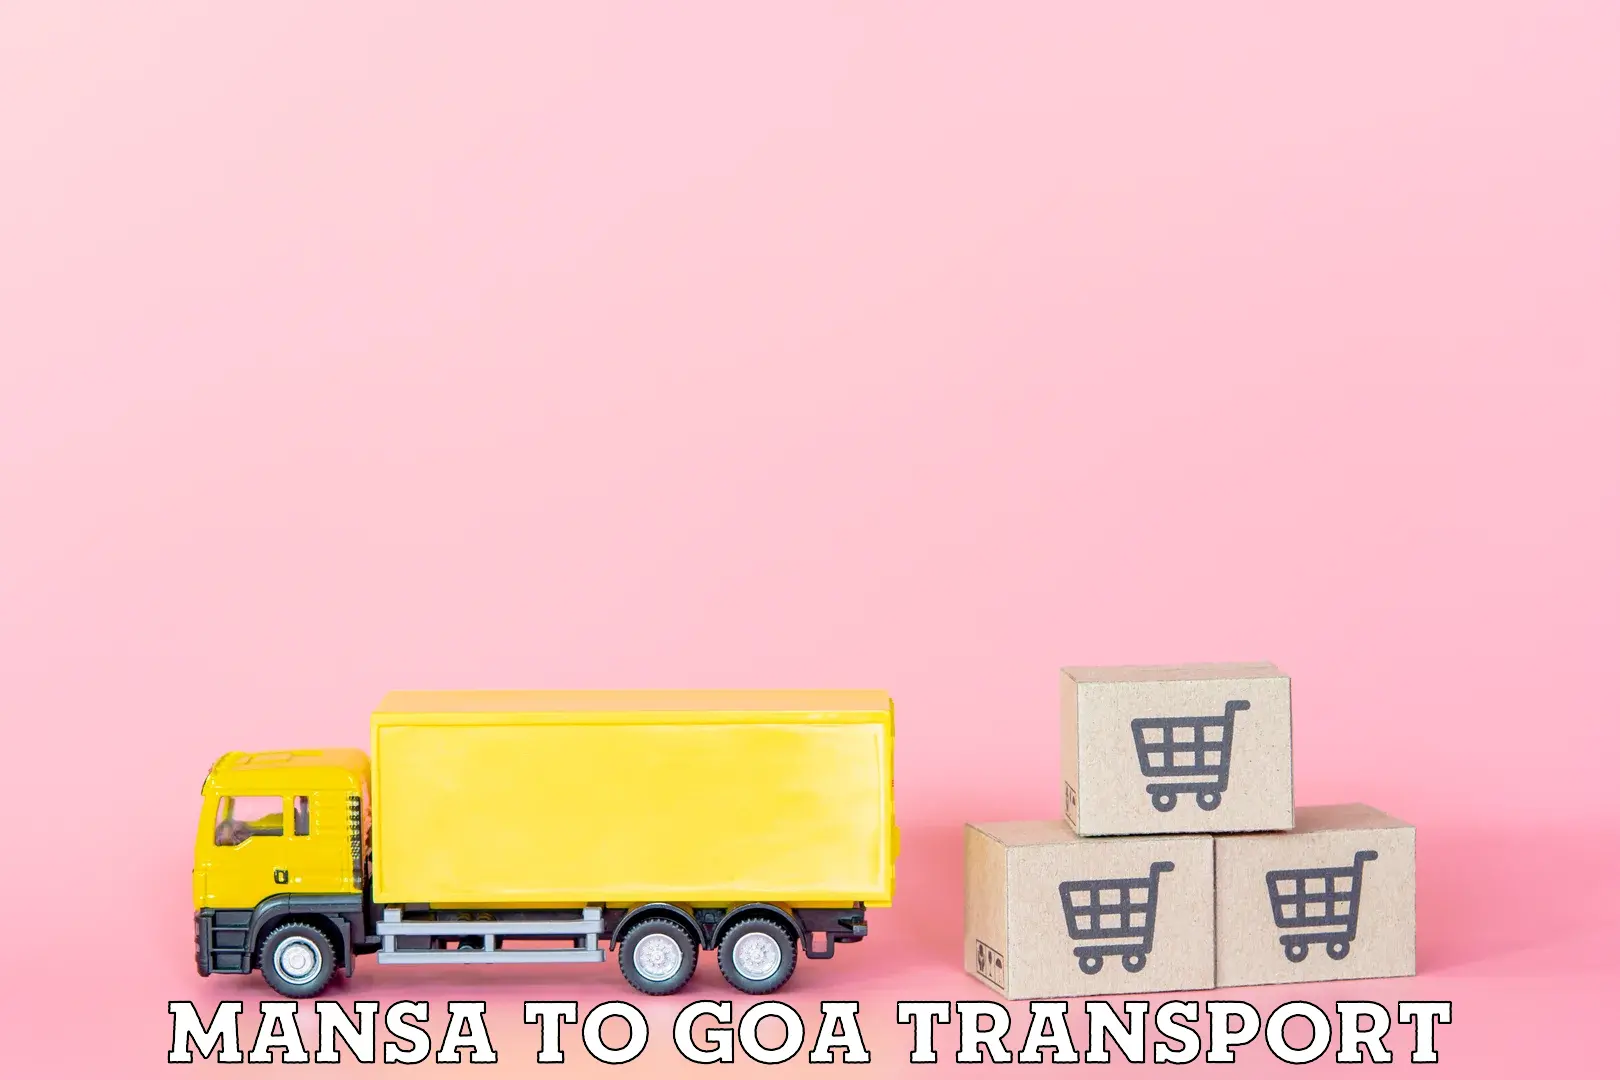 Air cargo transport services in Mansa to Vasco da Gama